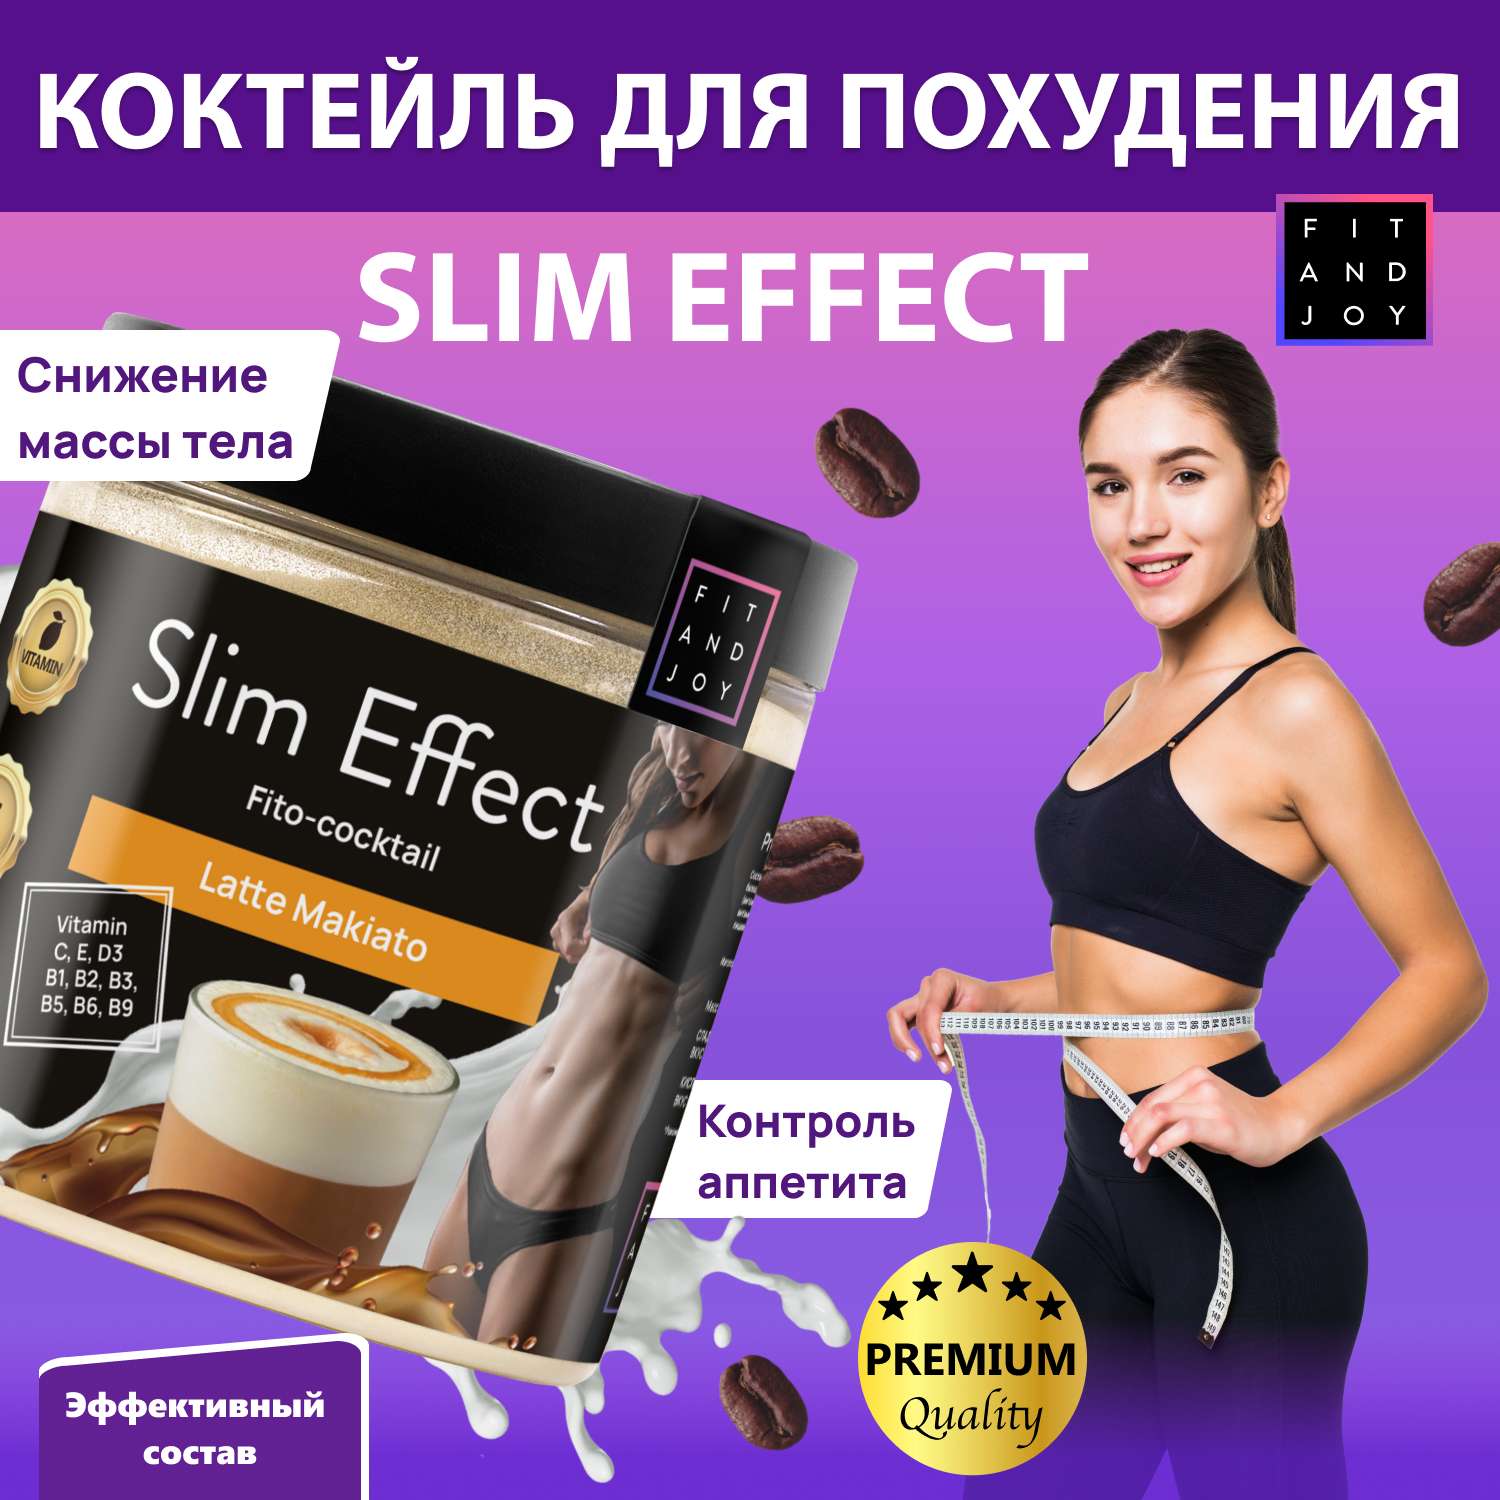 Фитококтейль FIT AND JOY Slim Effect для похудения - фото 2